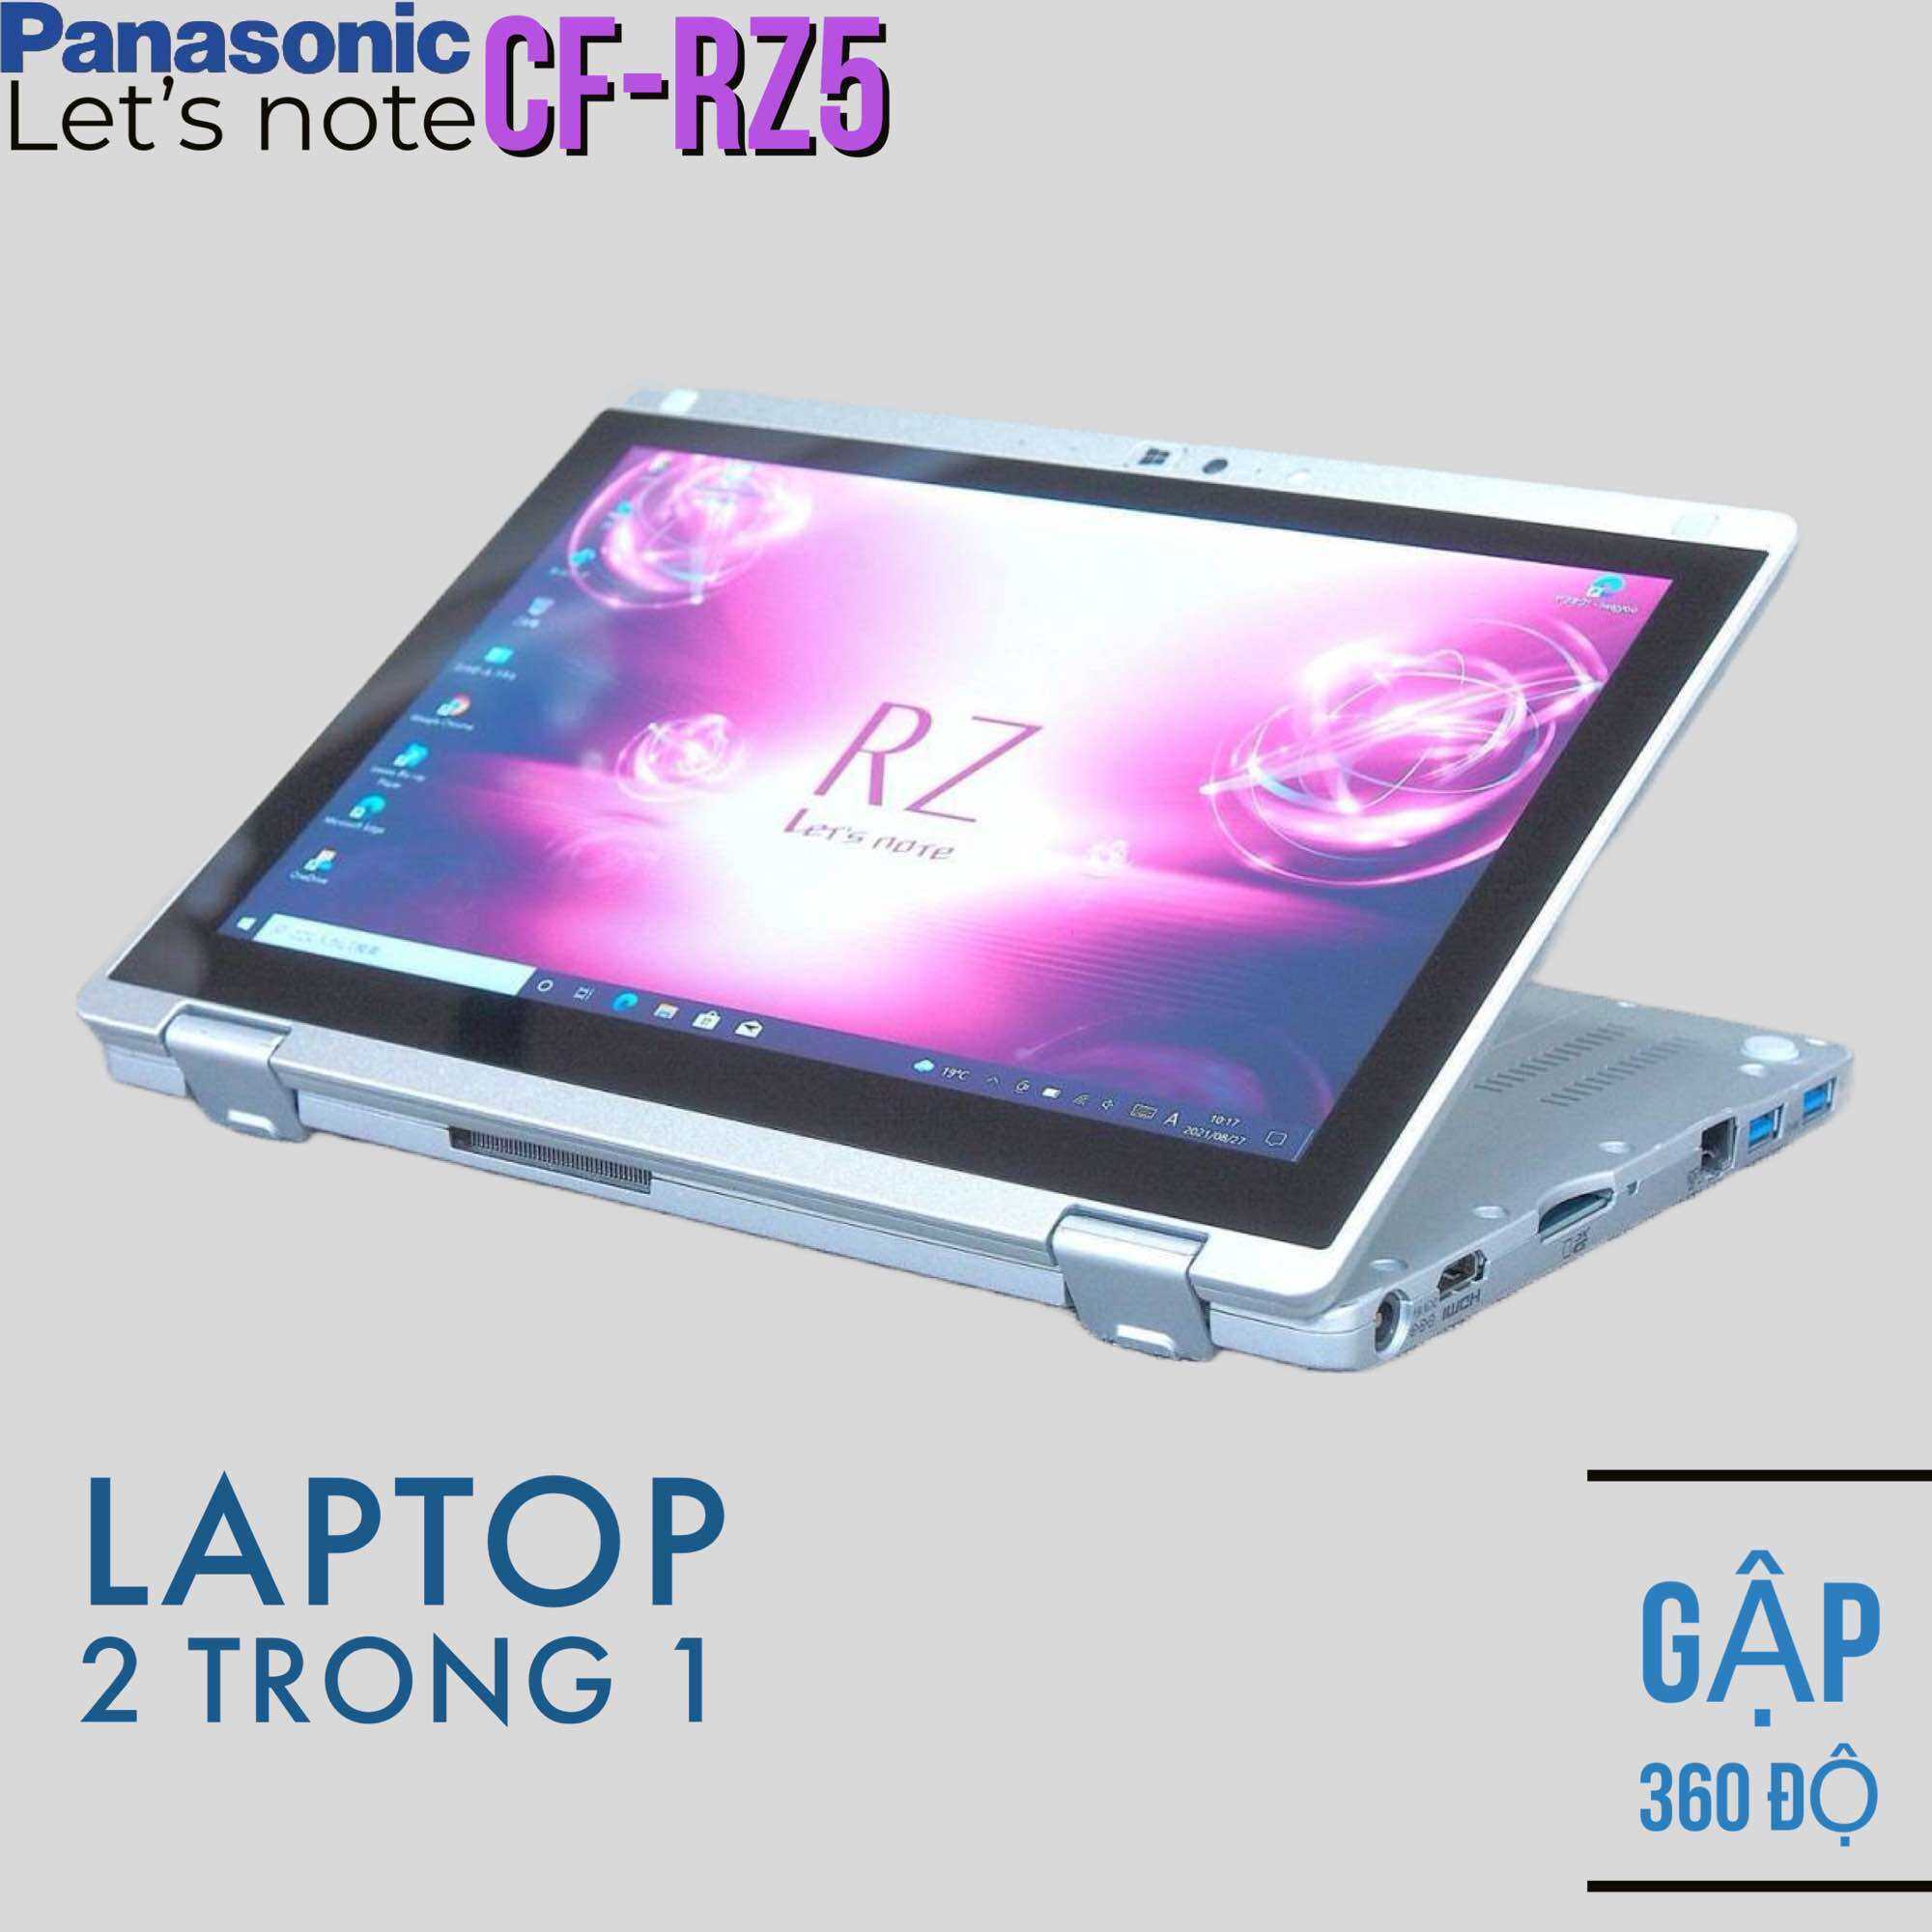 Laptop 2 trong 1 Panasonic CF-RZ5 Core M5-6Y57, 8gb ram, 256gb SSD, màn 10.1” Full HD cảm ứng gập 360, vỏ nhôm magie siêu nhẹ